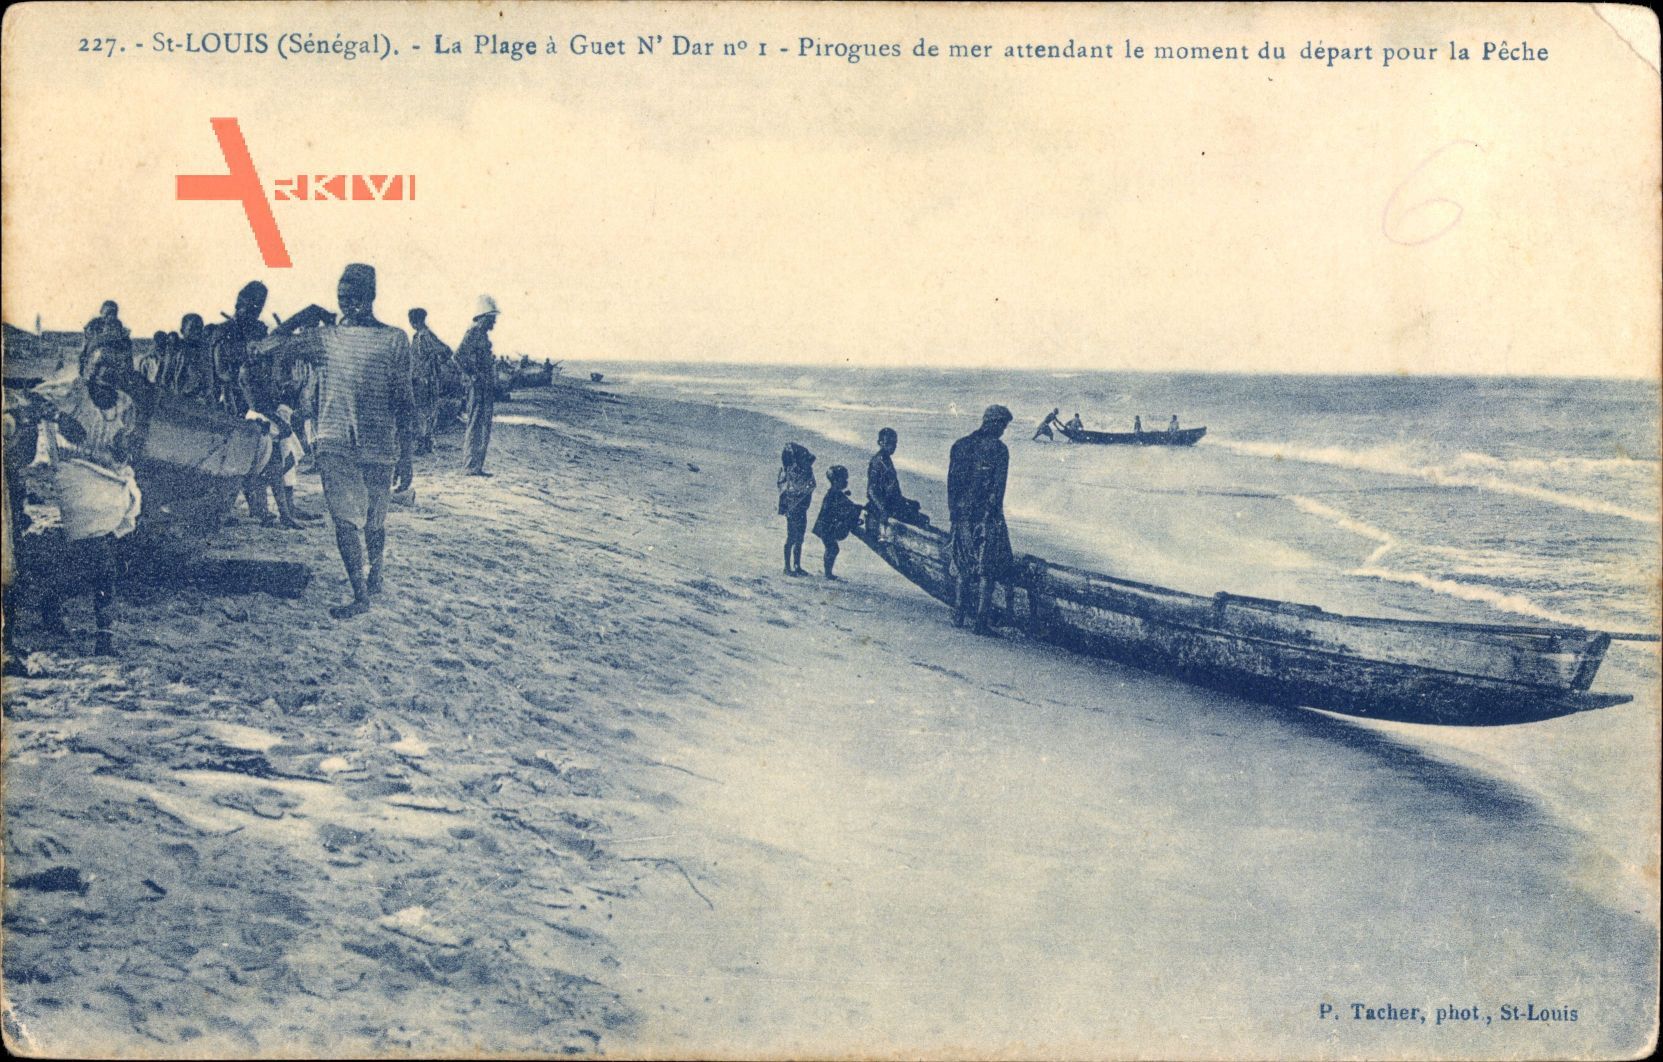 St. Louis Senegal, La Plage à Guet N'Dar, Pirogues, Fischerboote, Strand